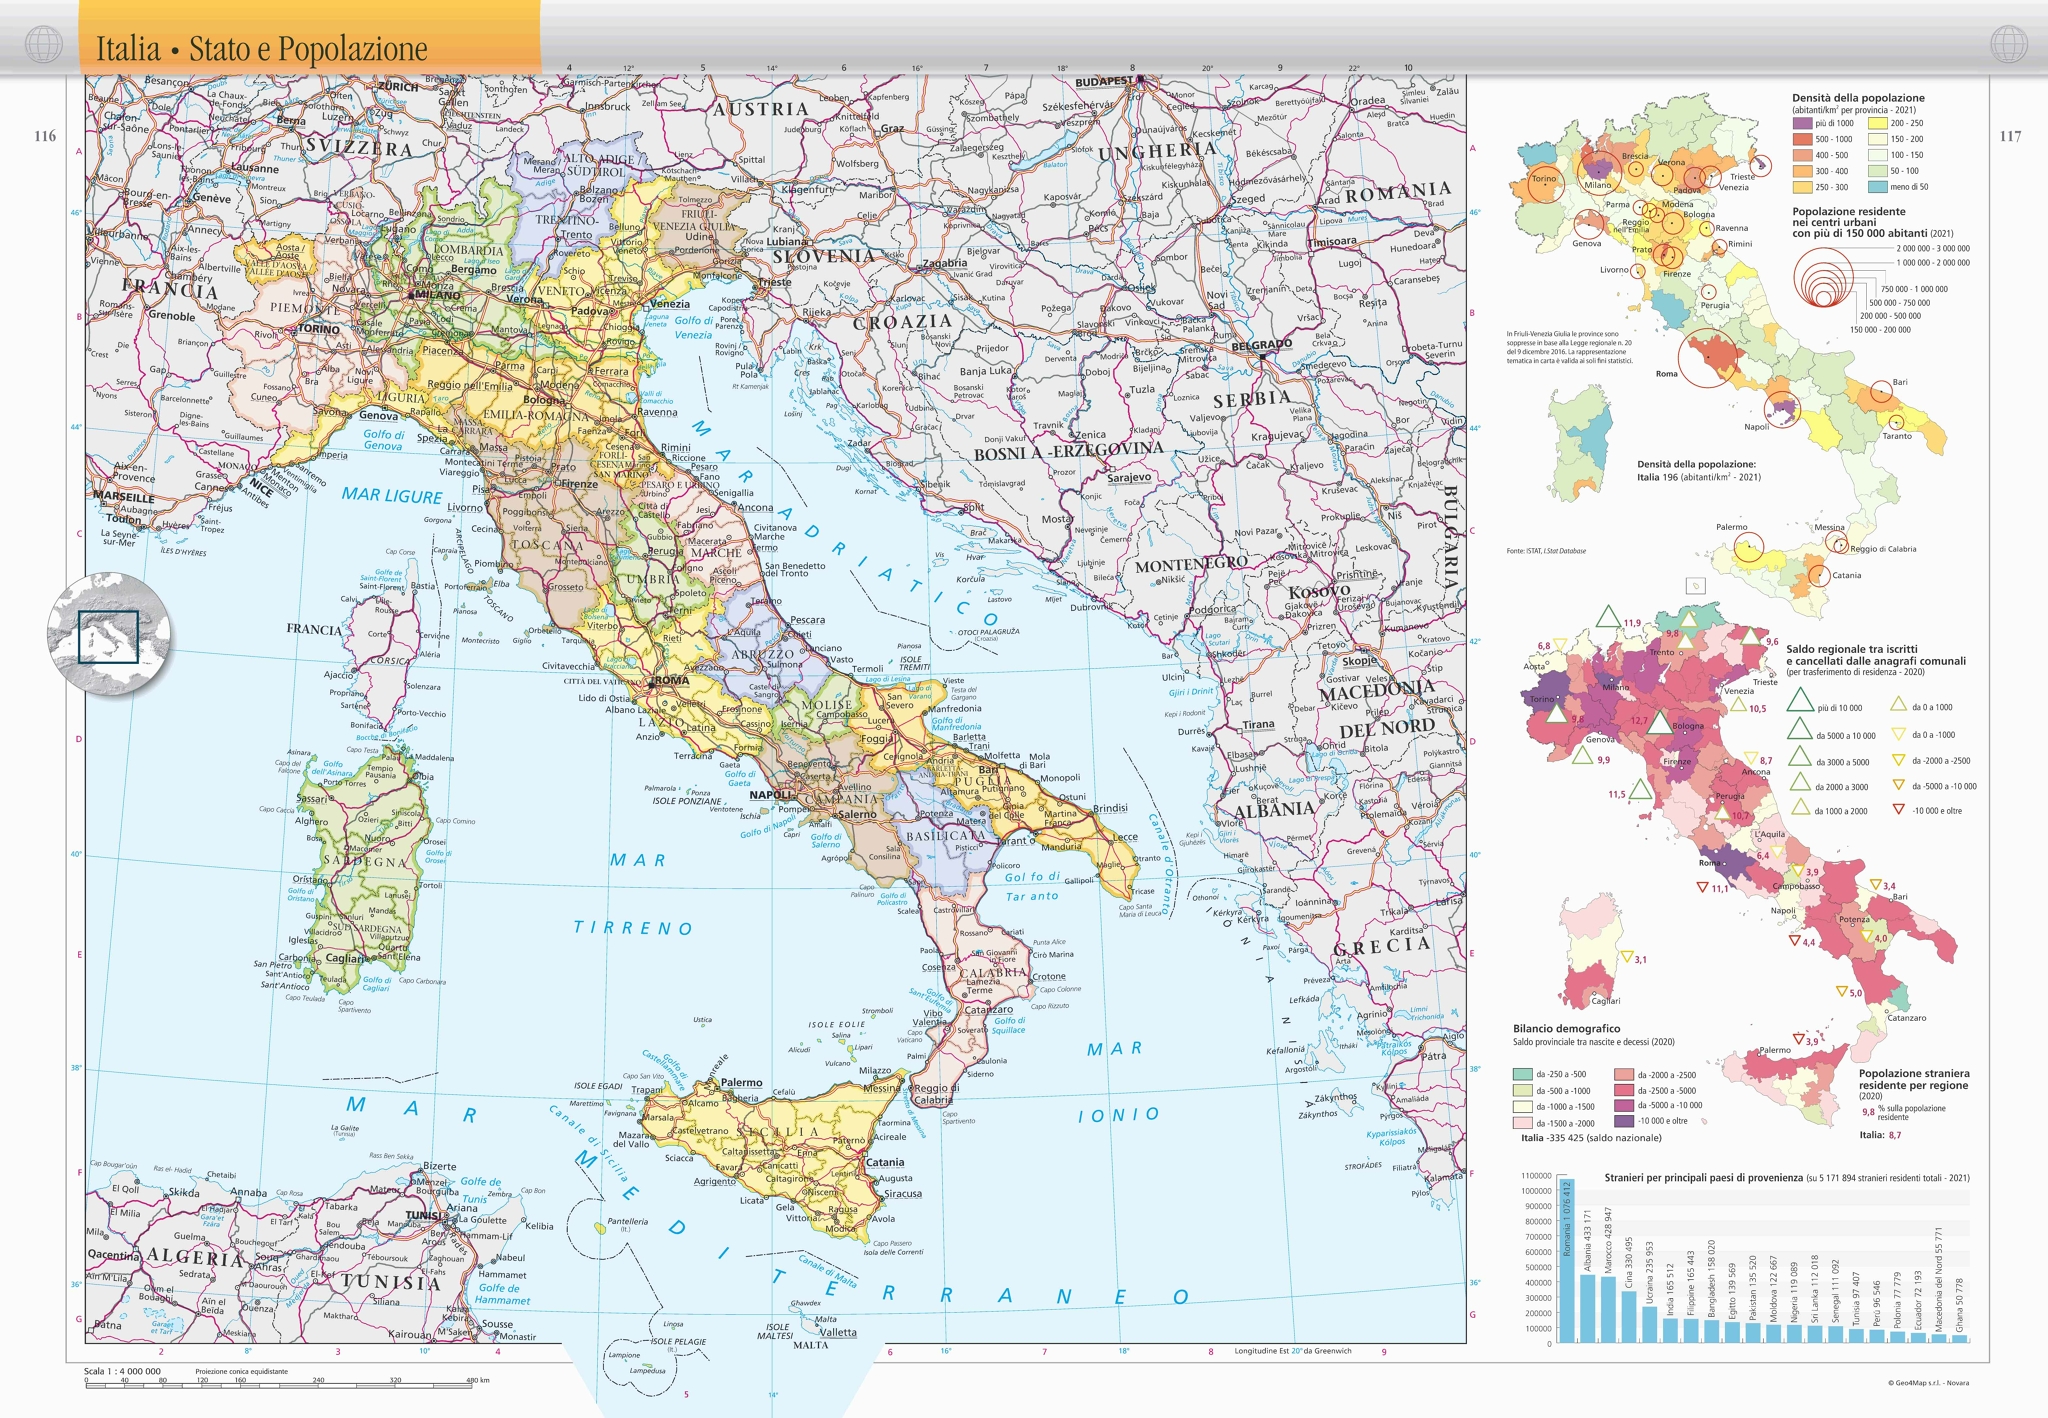 Atlante Geografico De Agostini 2024 - De Luxe Edition, Libri